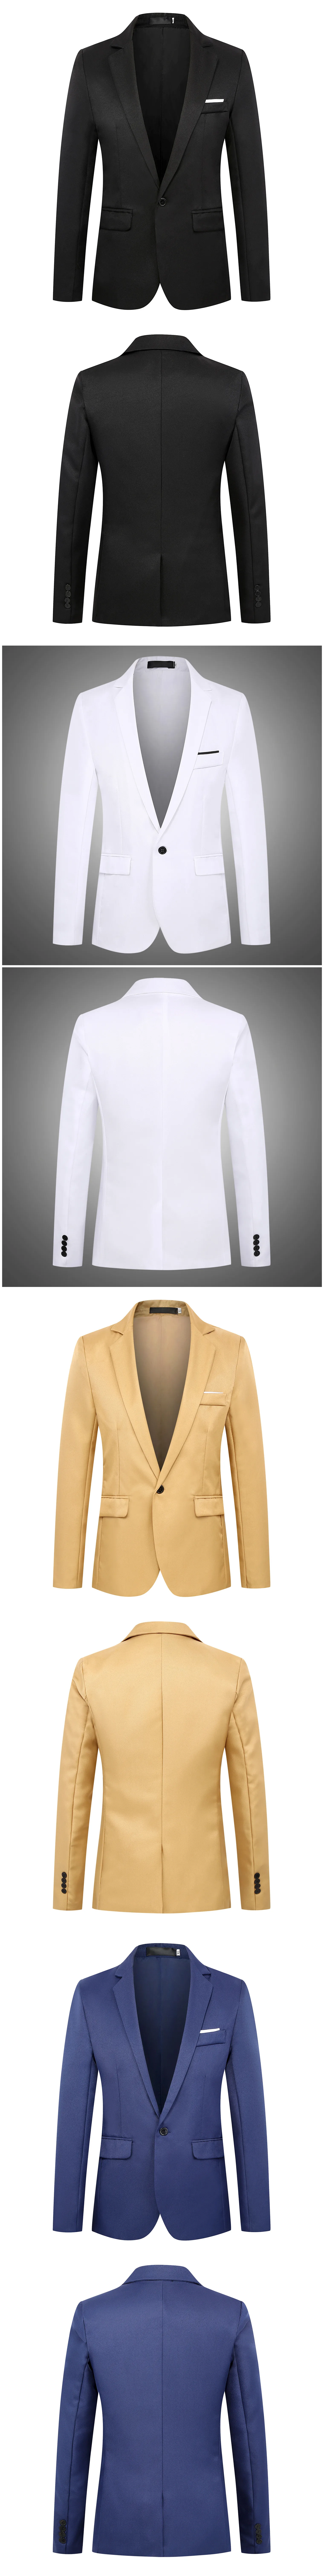 Костюмы для мужчин s куртка Новая мода Блейзер Homme сплошной цвет для мужчин бренд четыре сезона повседневное Slim Fit Бизнес Блейзер Masculino пальто